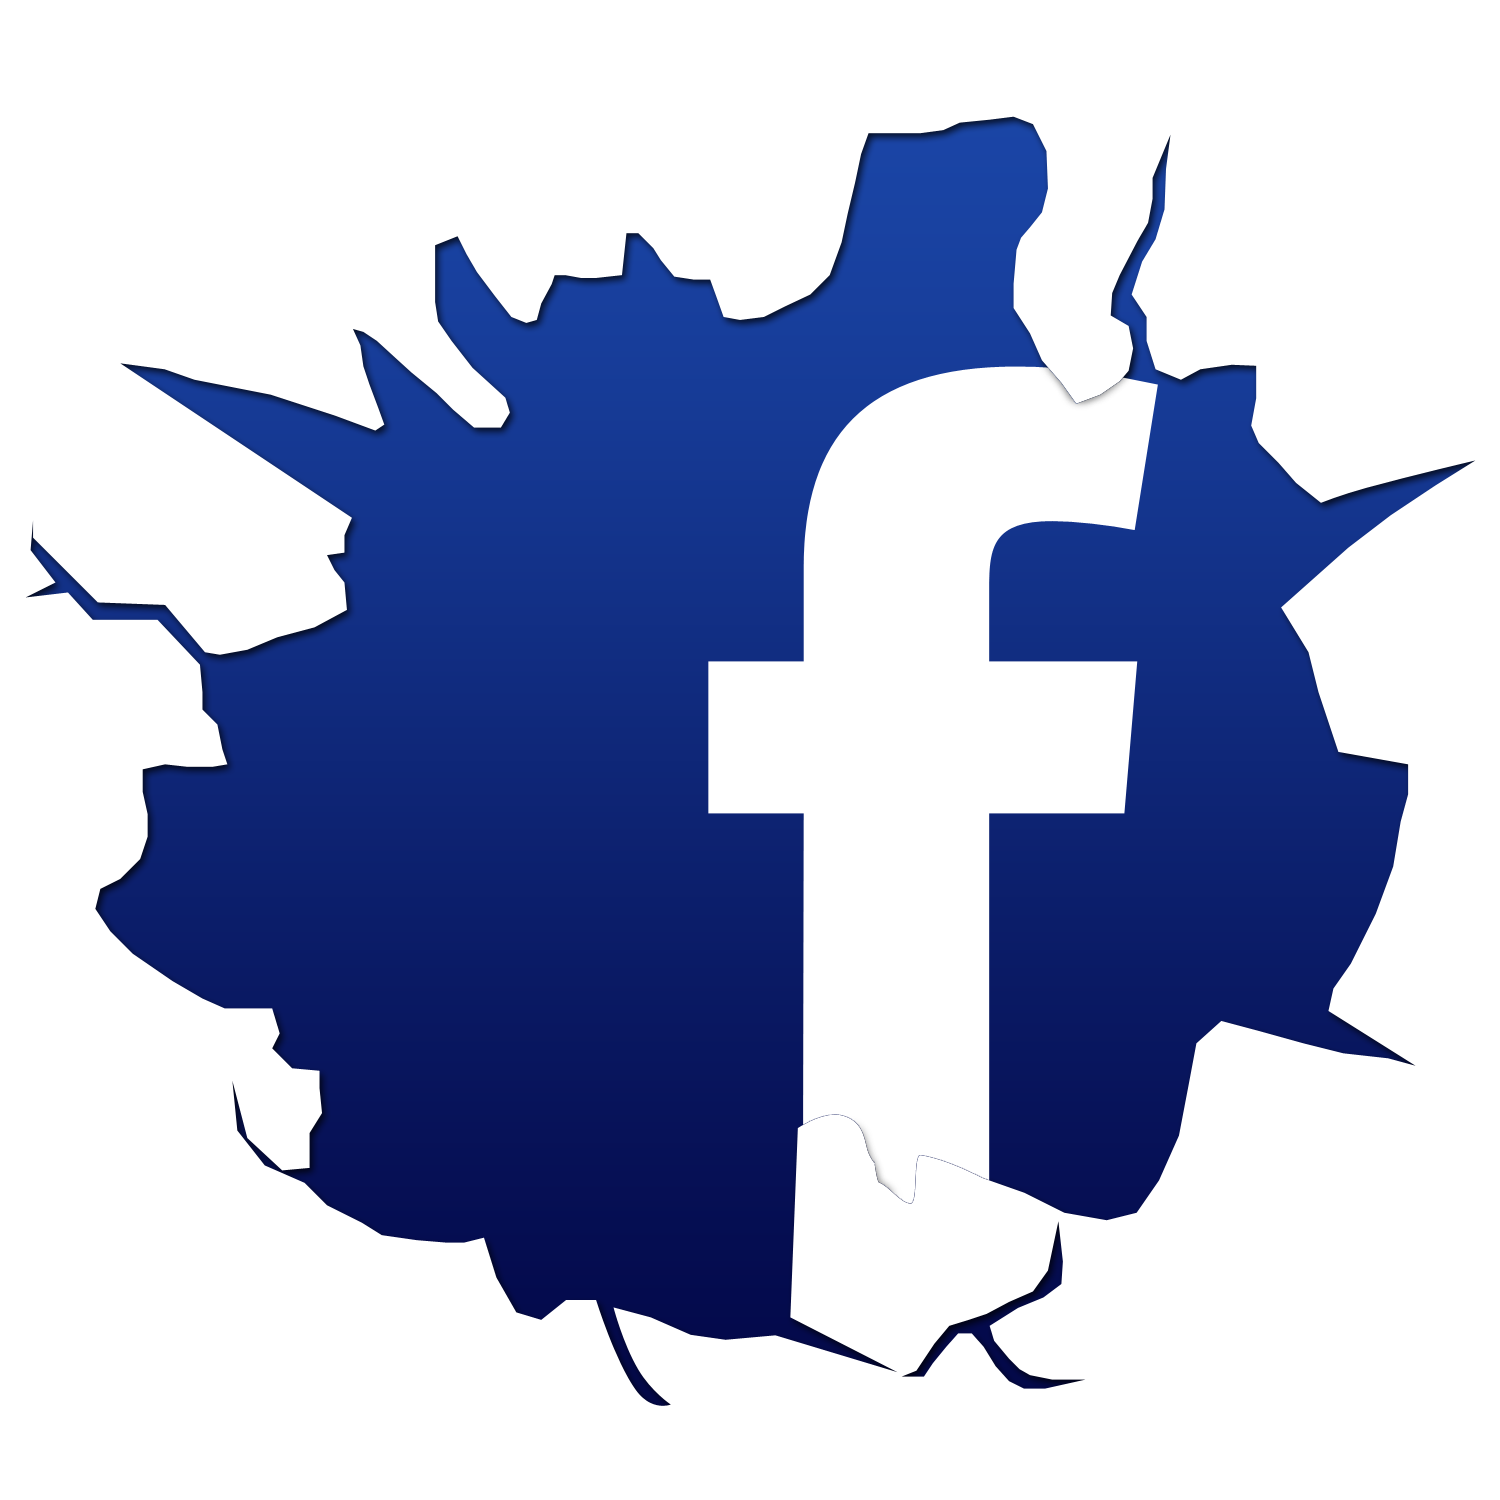 تحميل شعار موقع فيس بوك فيكتور مجانا svg eps psd ai تحميل لوغو فيس بوك